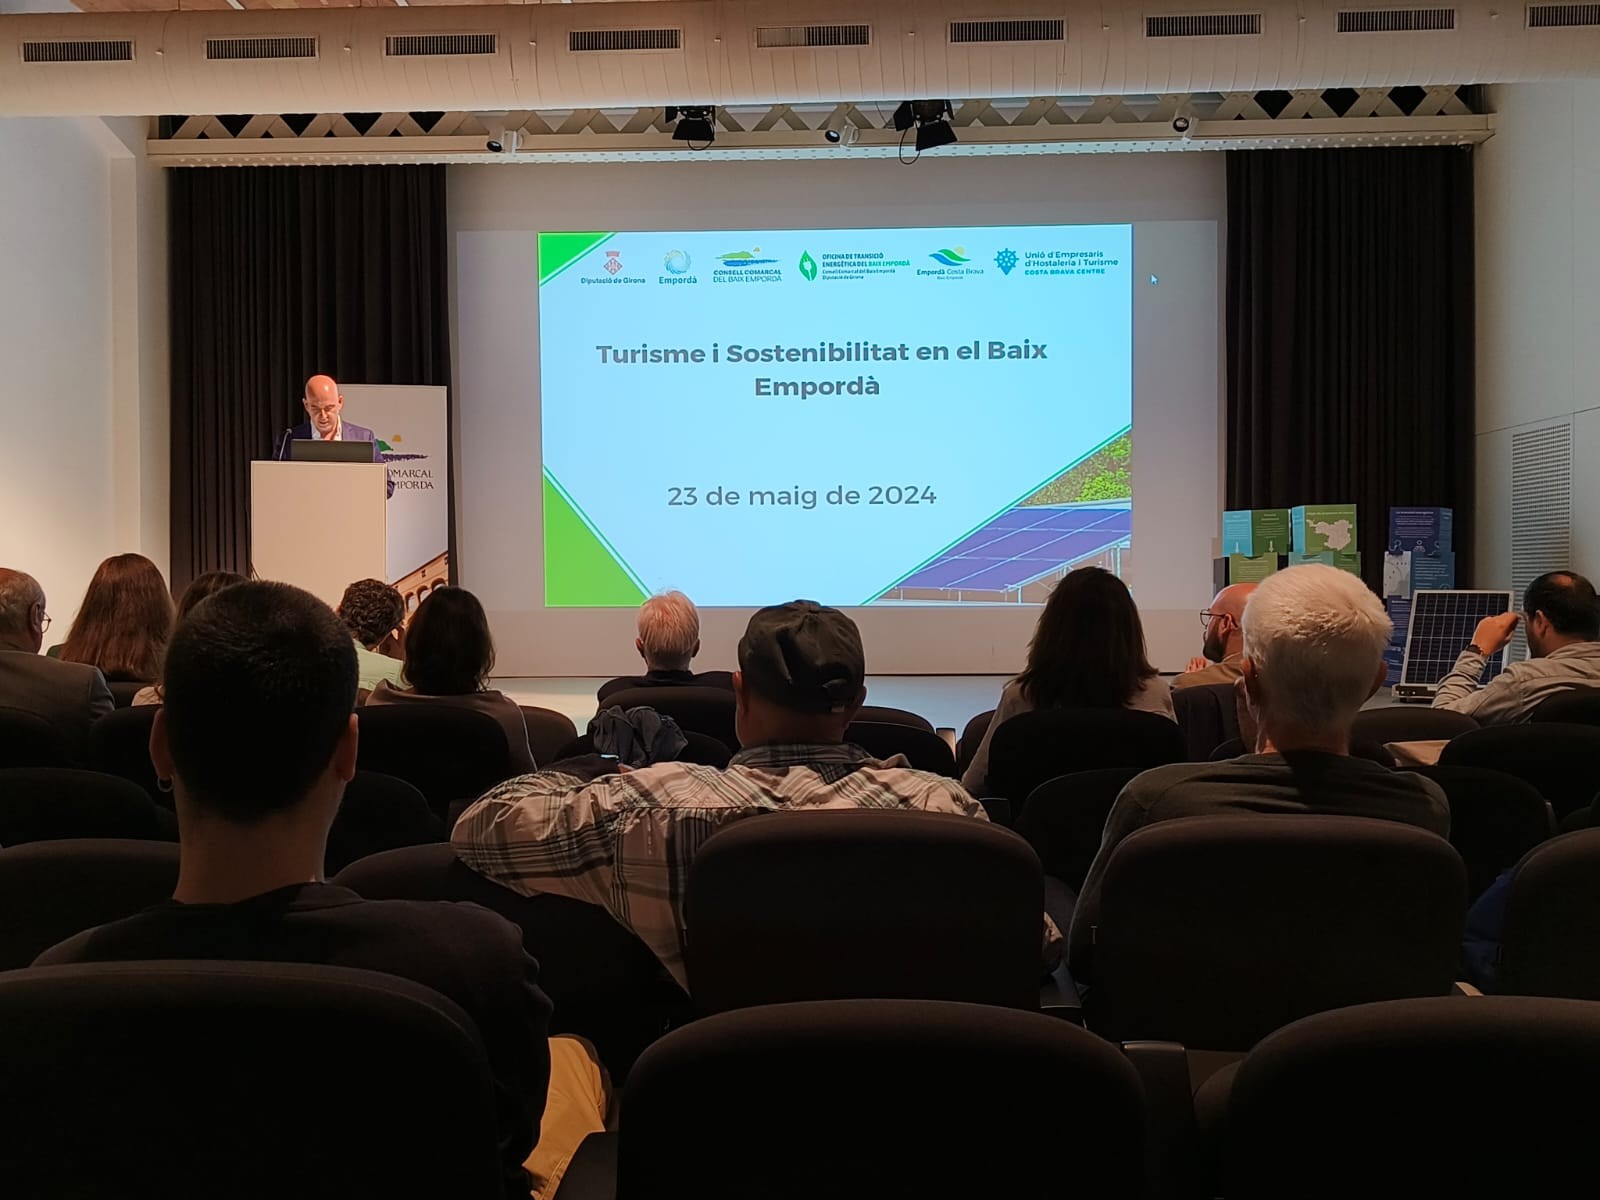 Conference about improvement plan for the Baix Empordà tourist destination